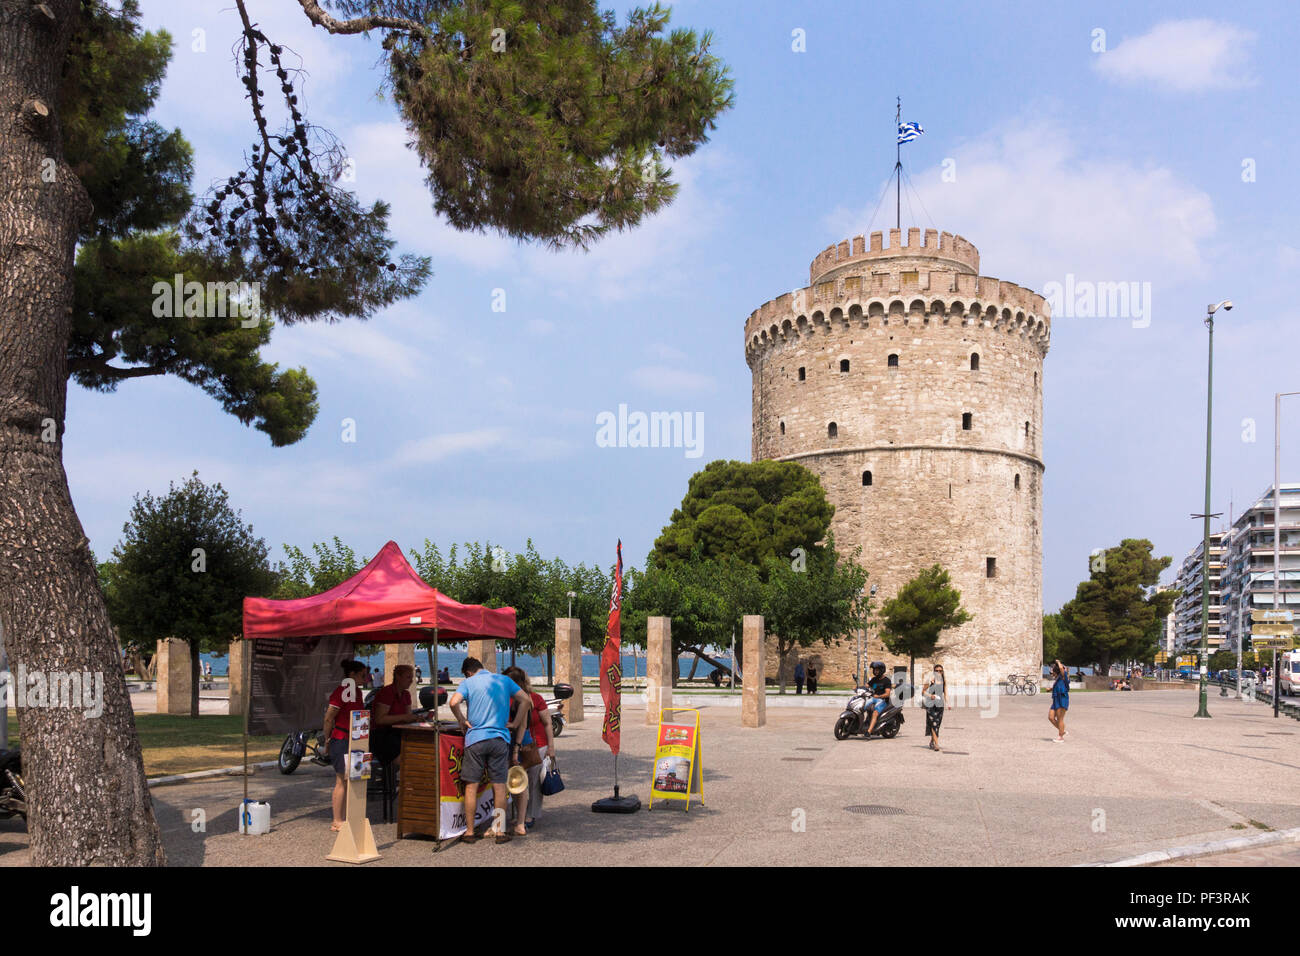 La Torre Bianca di Salonicco, un punto di riferimento fortezza ottomana e ex carcere e una popolare destinazione turistica in Grecia Foto Stock